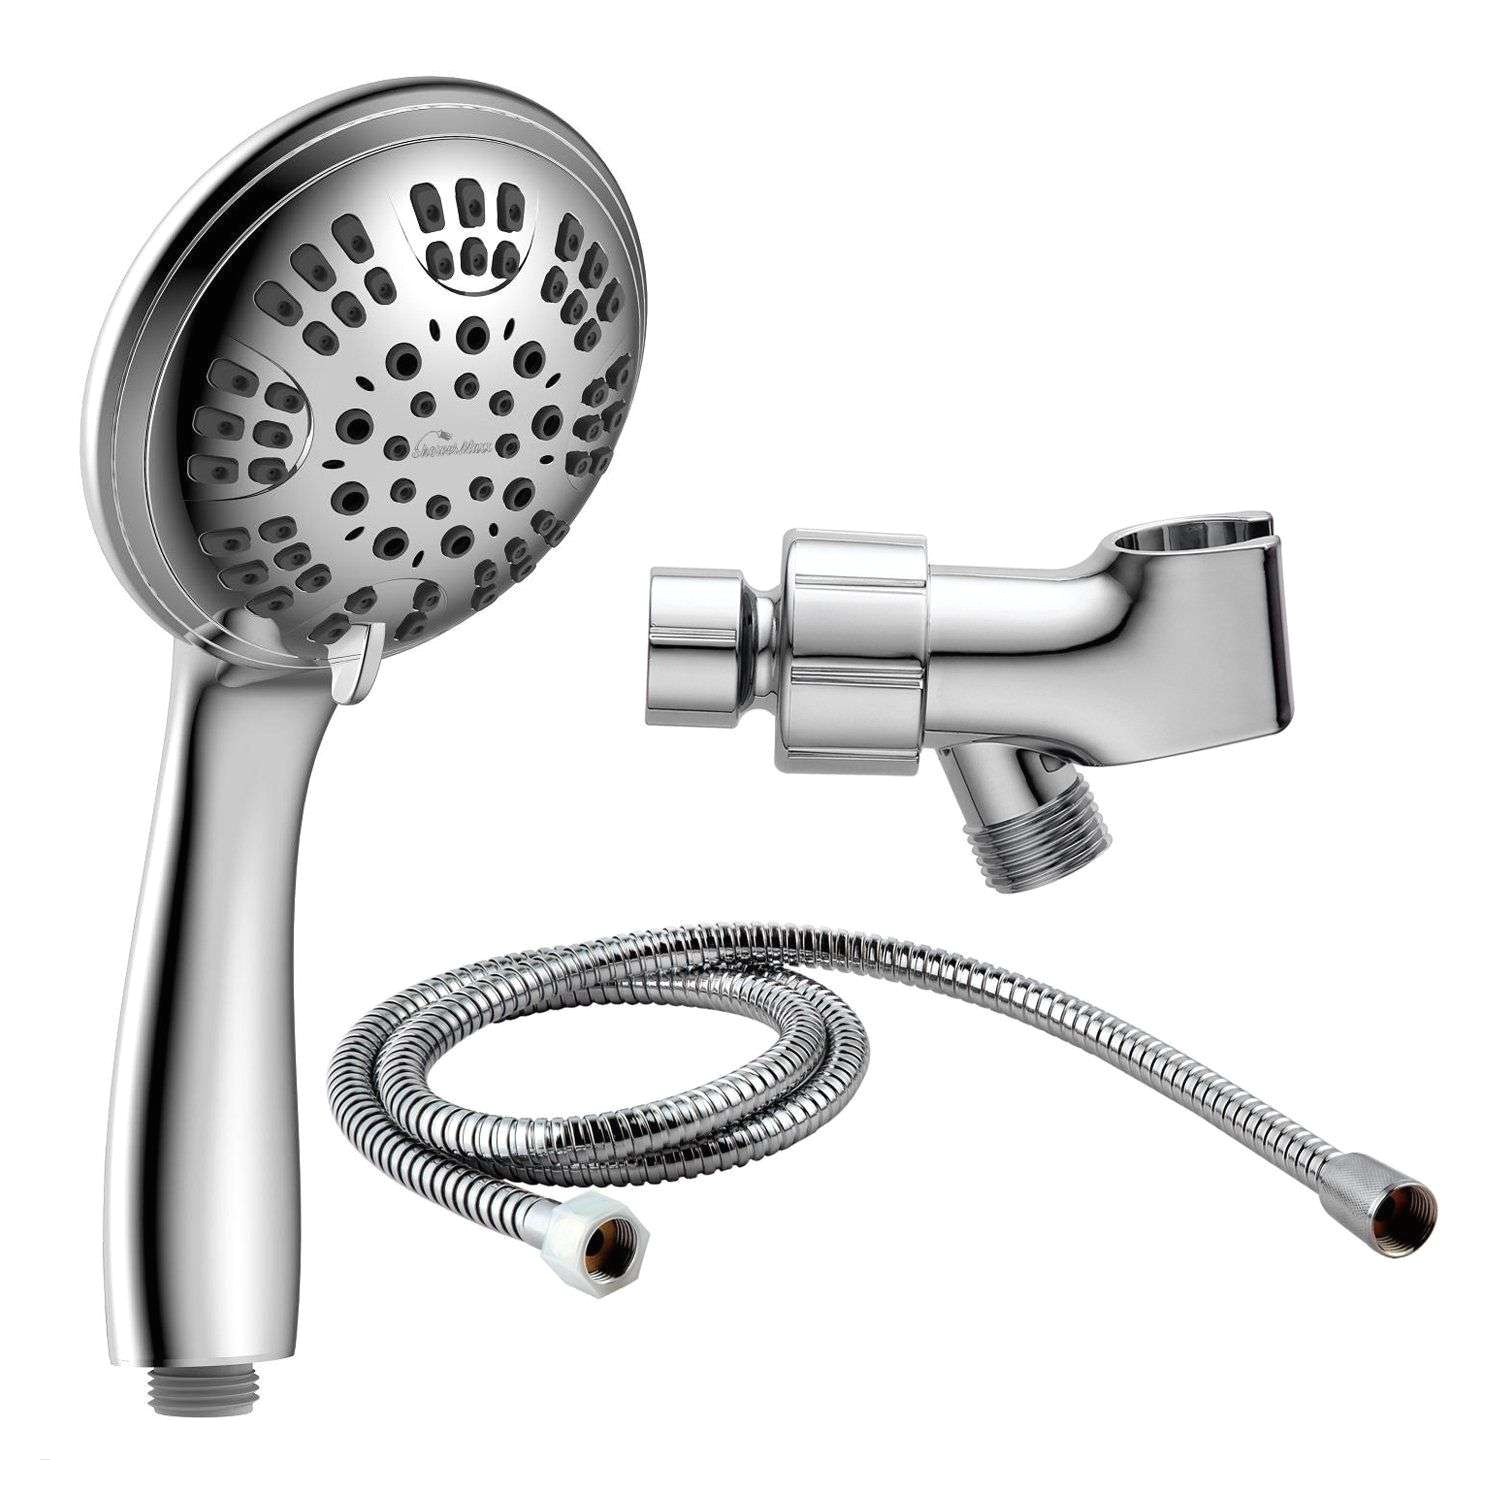 speakman outdoor shower inspirational speakman anystream shower head best best handheld shower head